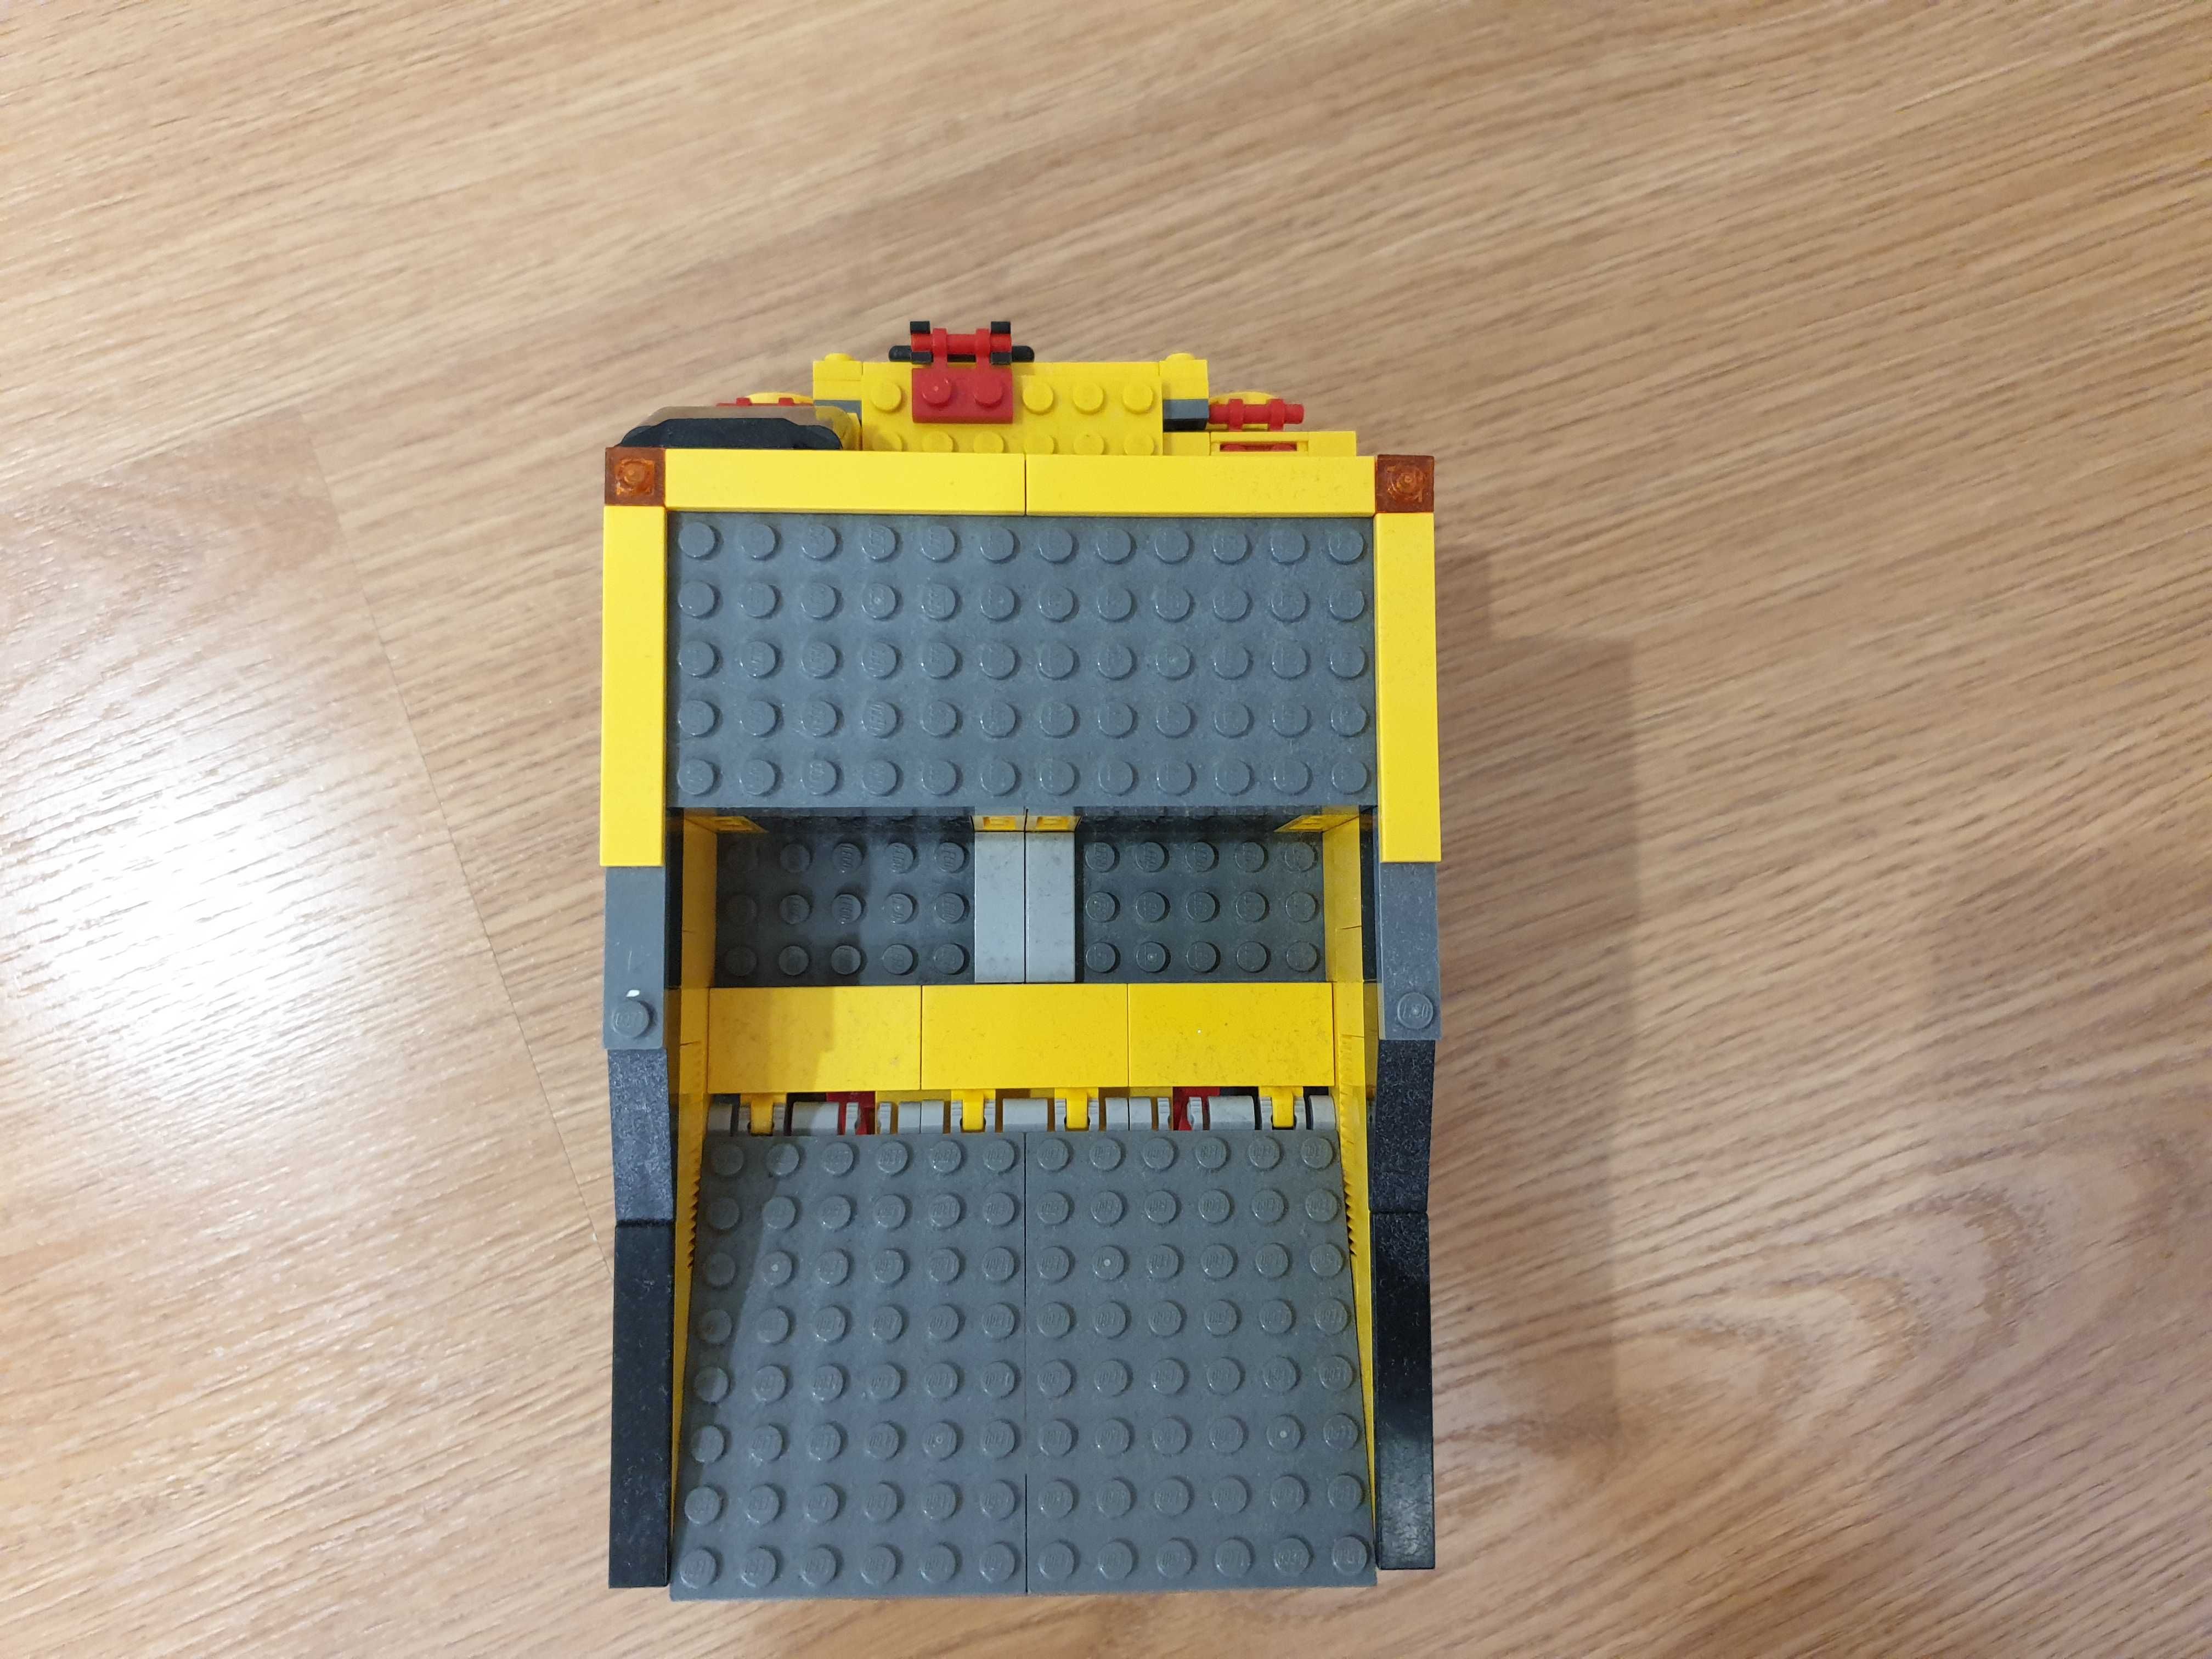 LEGO City 4202 Ciężarówka Górnicza